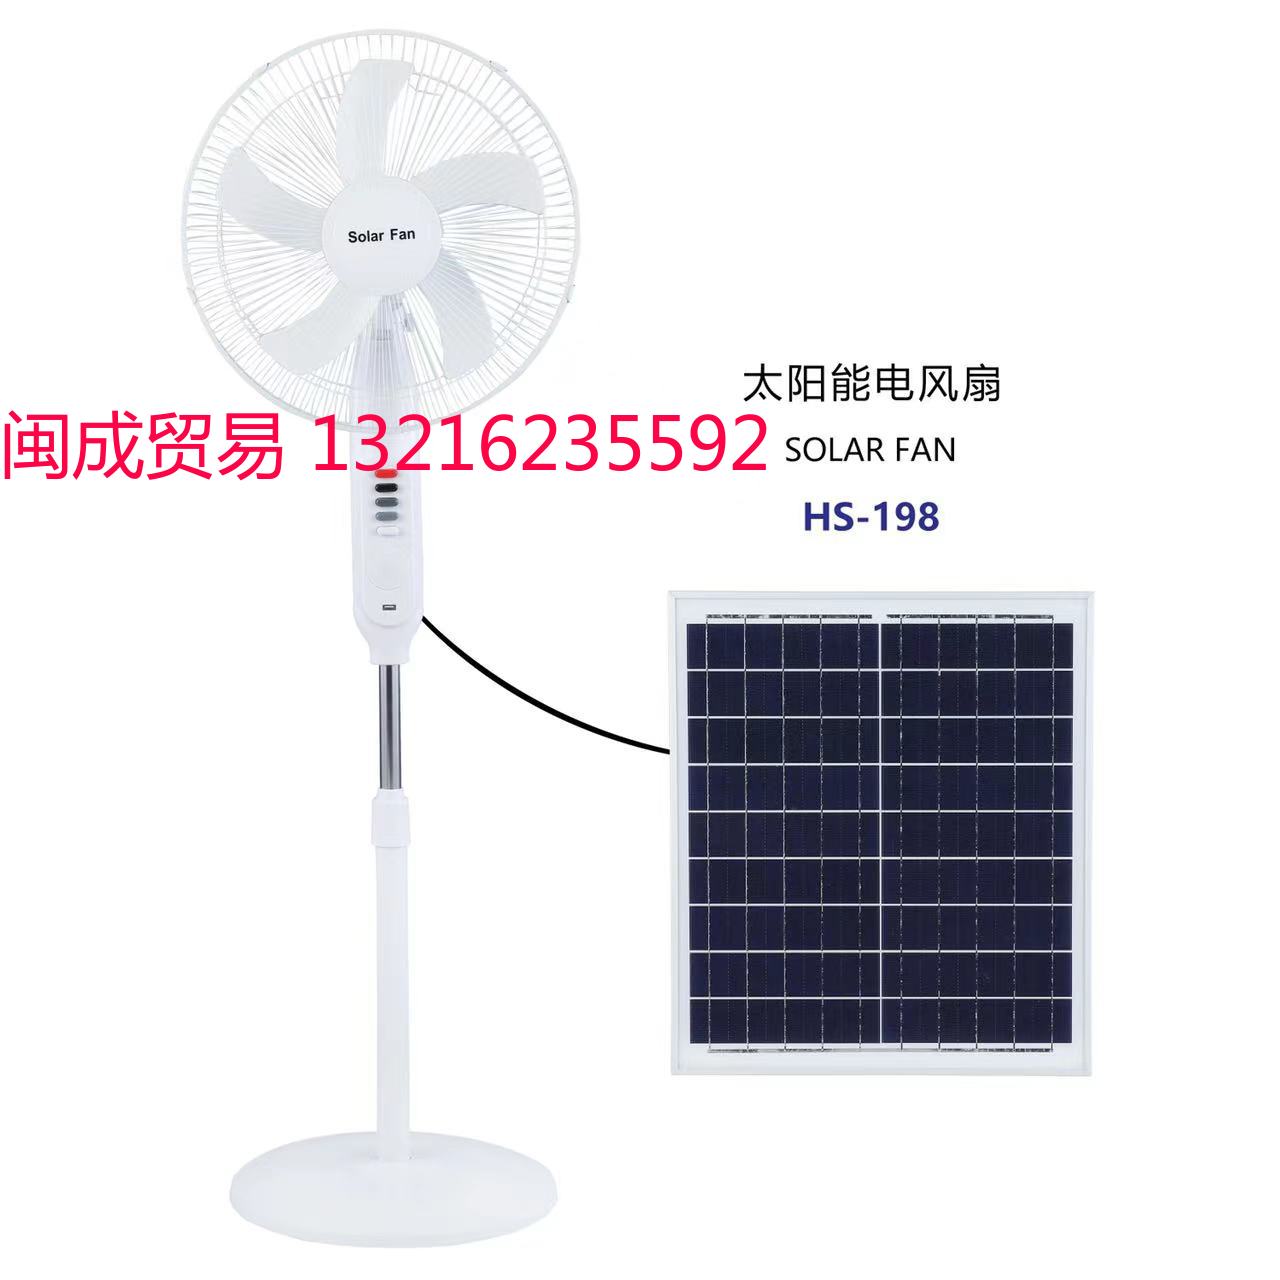 太阳能风扇 Solar fan HS-198图